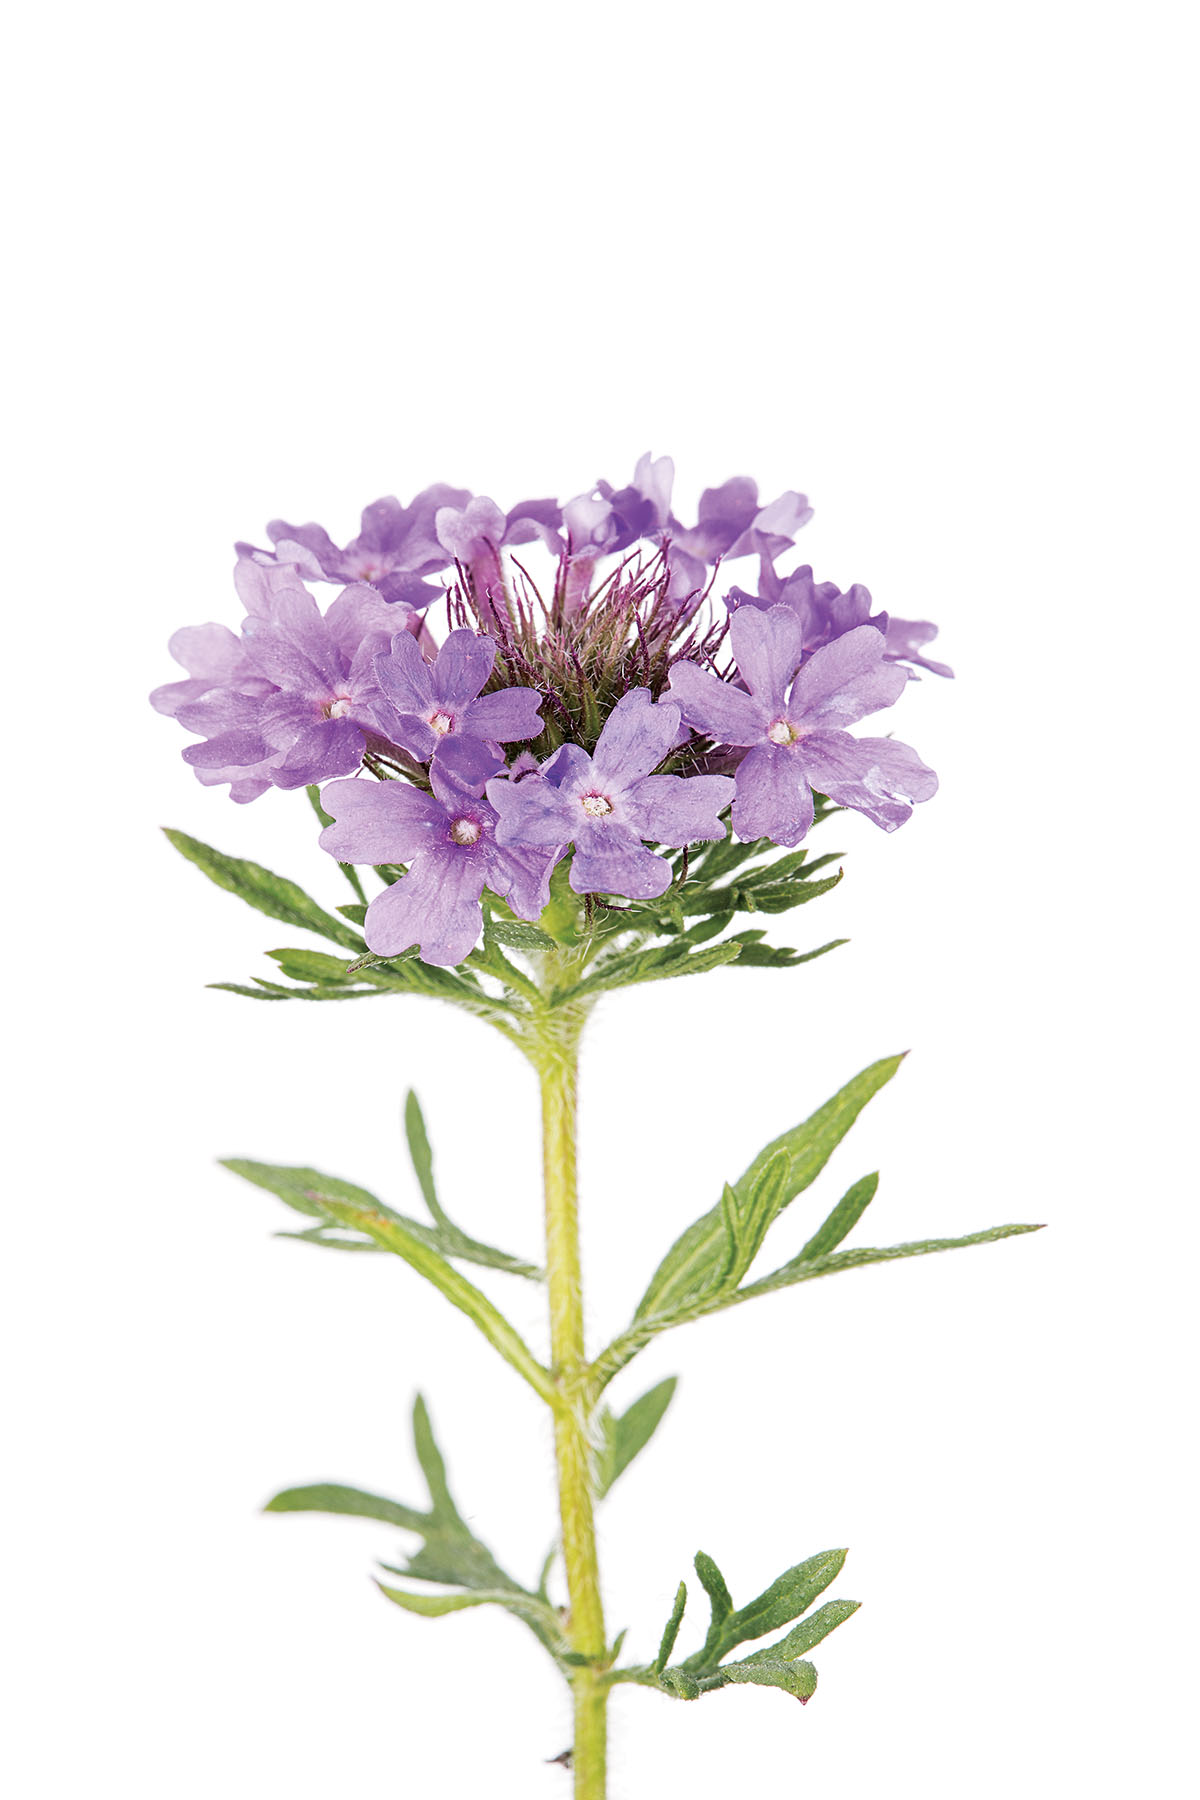 purple wildflowers names